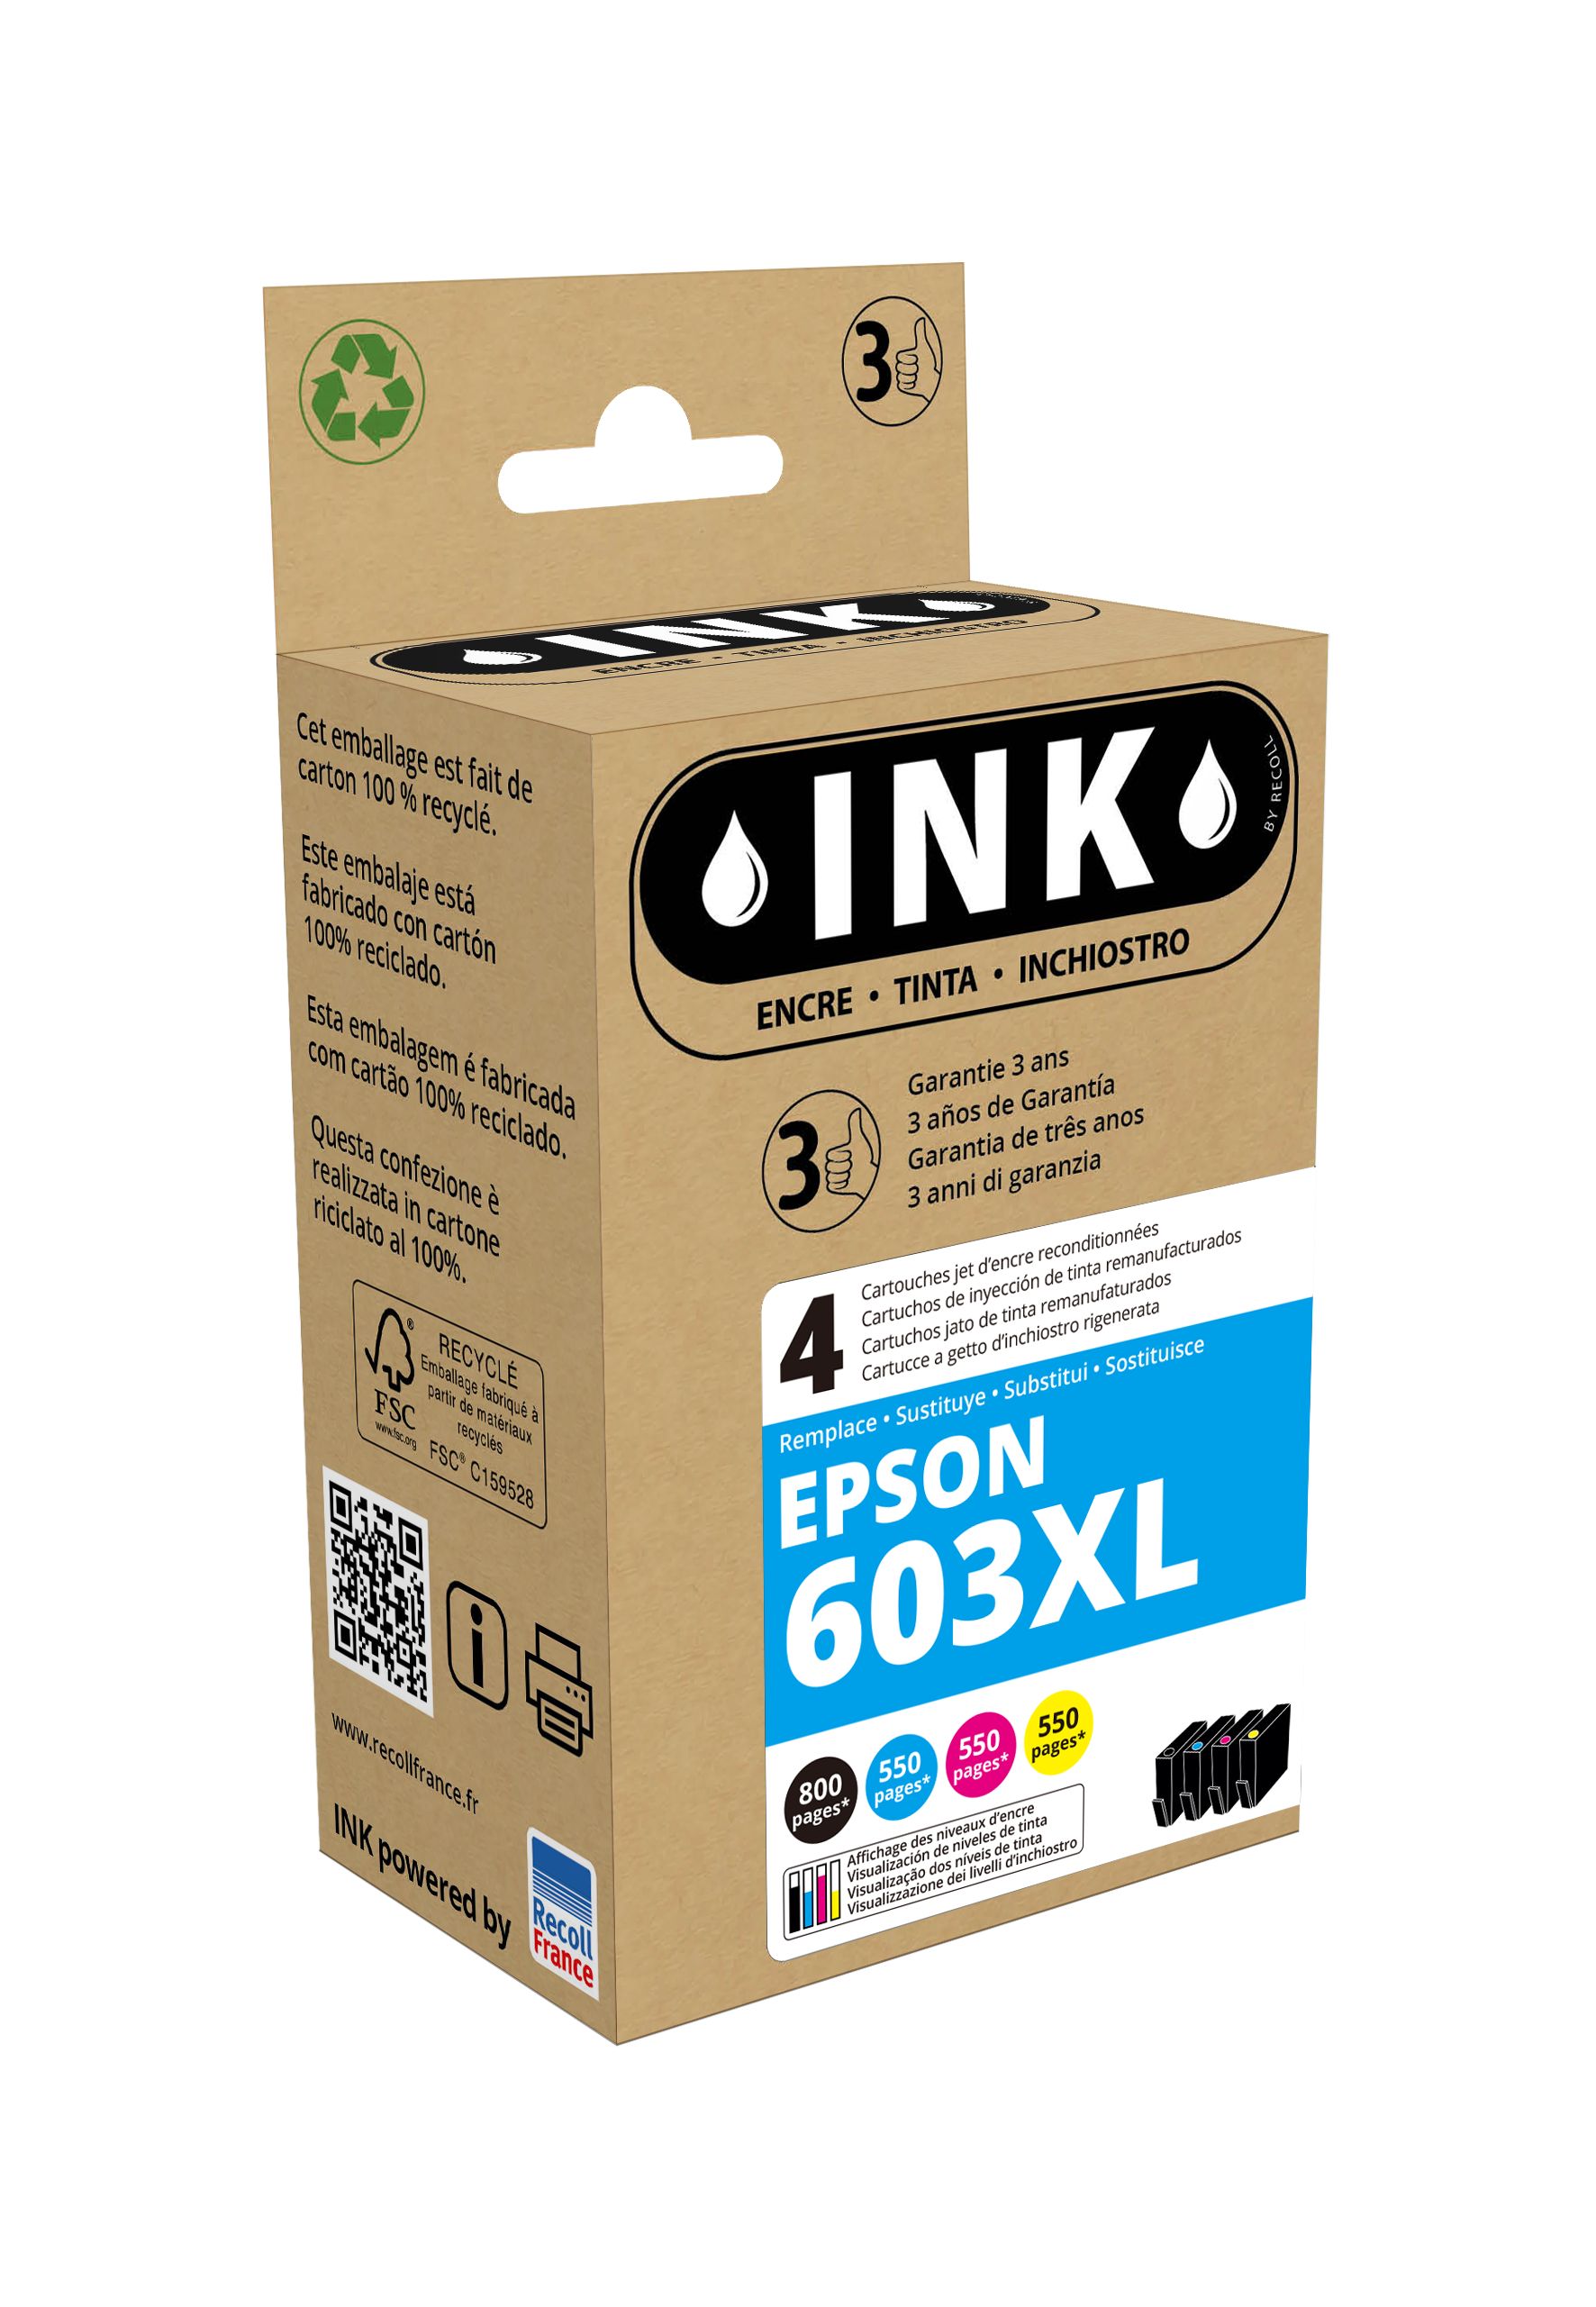 Cartouche compatible Epson 603XL Etoile de mer - pack de 4 - noir, cyan,  magenta, jaune - ink